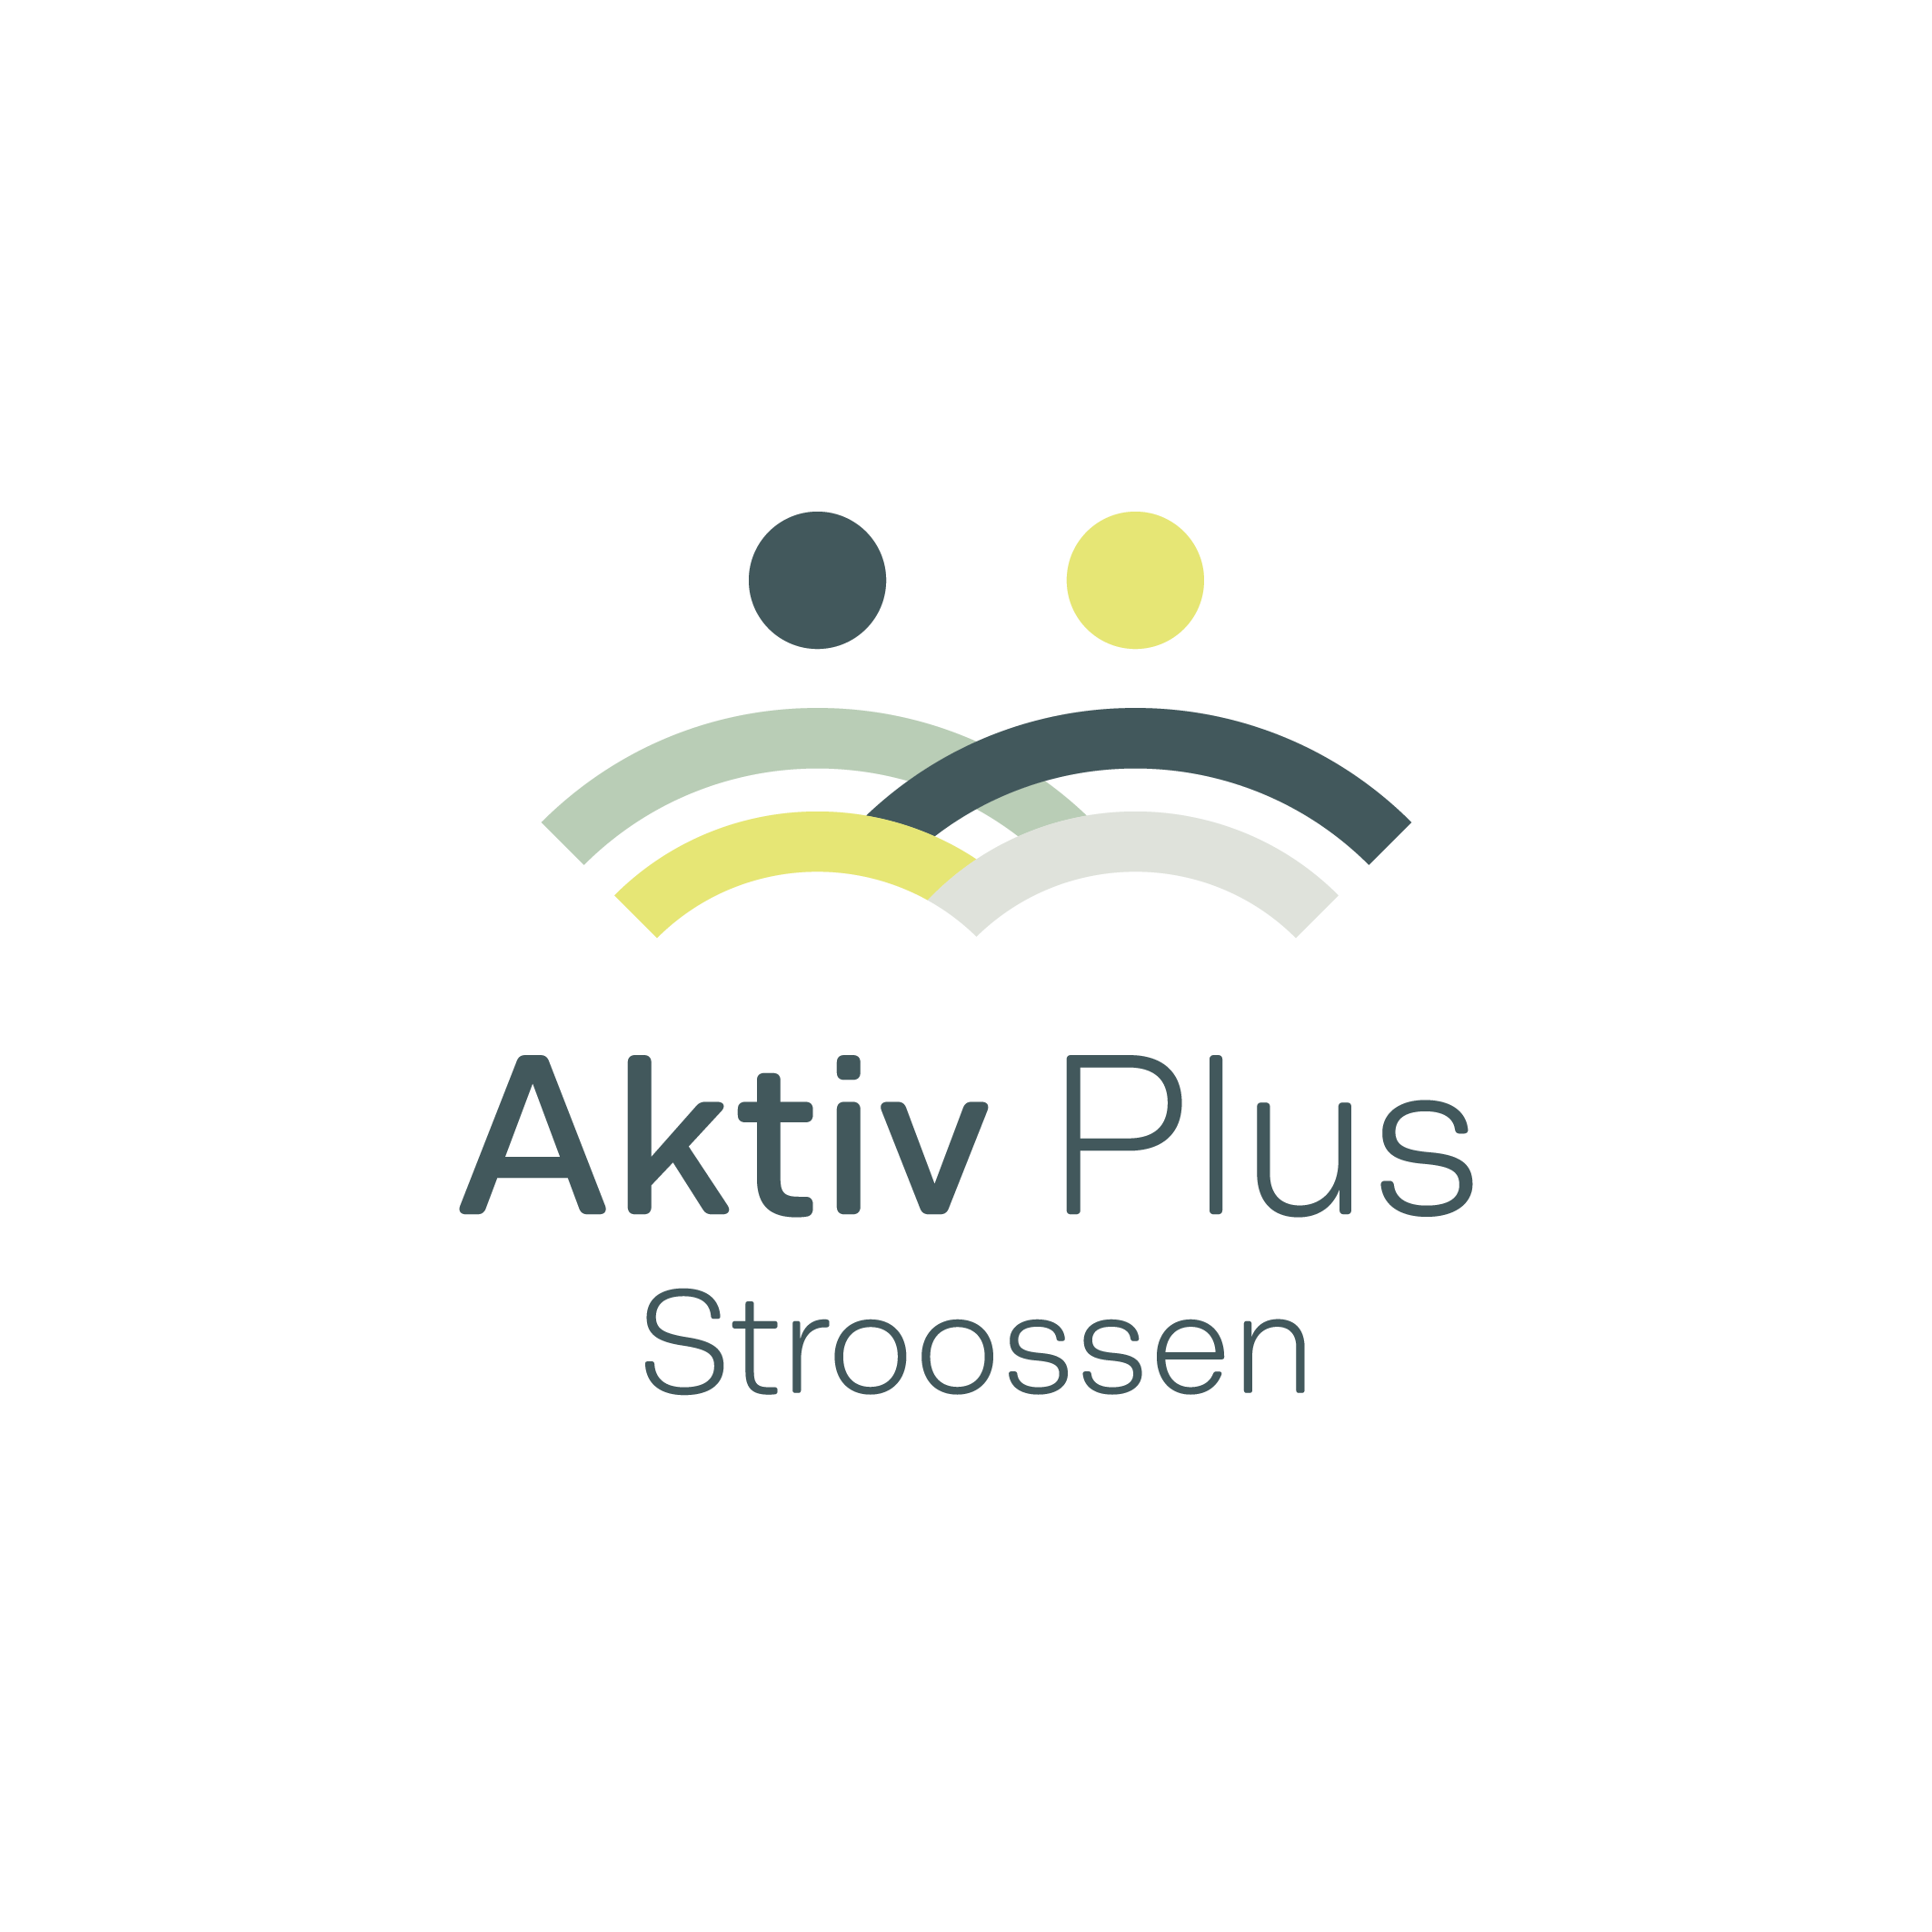 00_Logo_AktivPlusStroossen_RGB